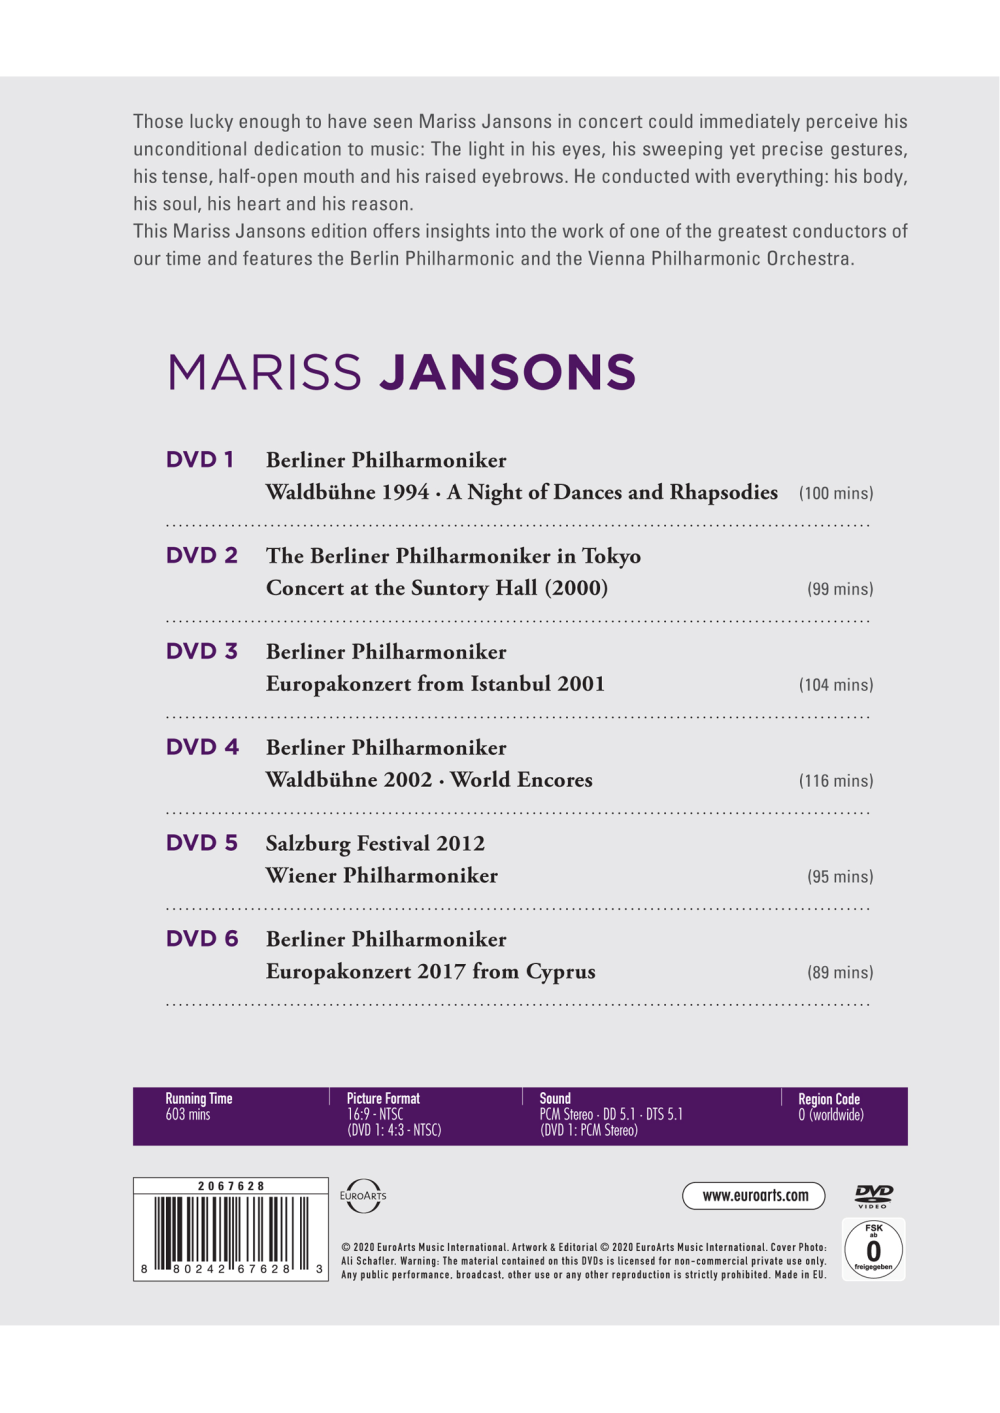 Conductors – Mariss Jansons - Retrospective - EUROARTS